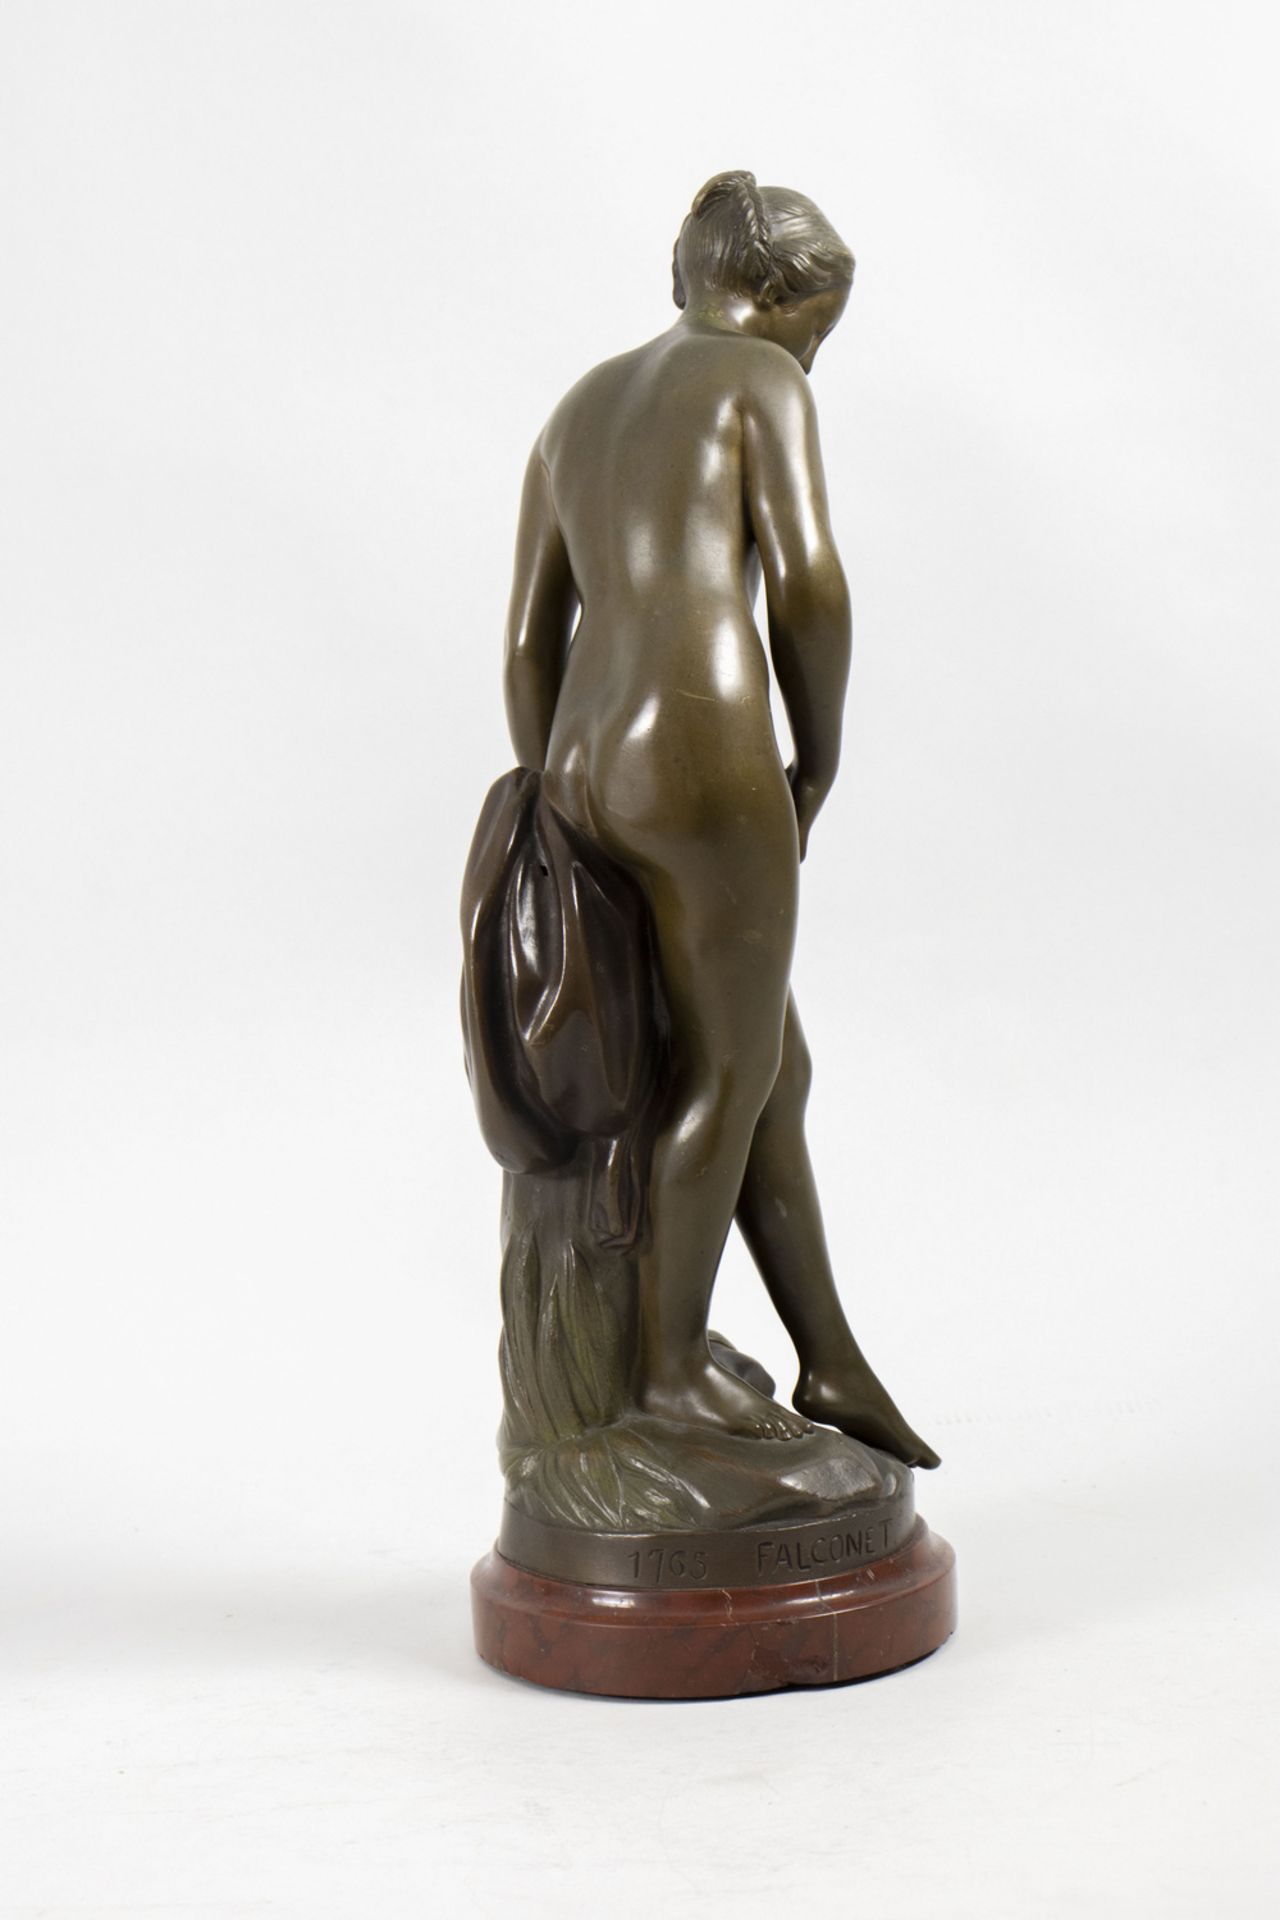 Die Badende, Bronzeskulptur nach Etienne Maurice Falconet (1716 -1791) - Bild 4 aus 7